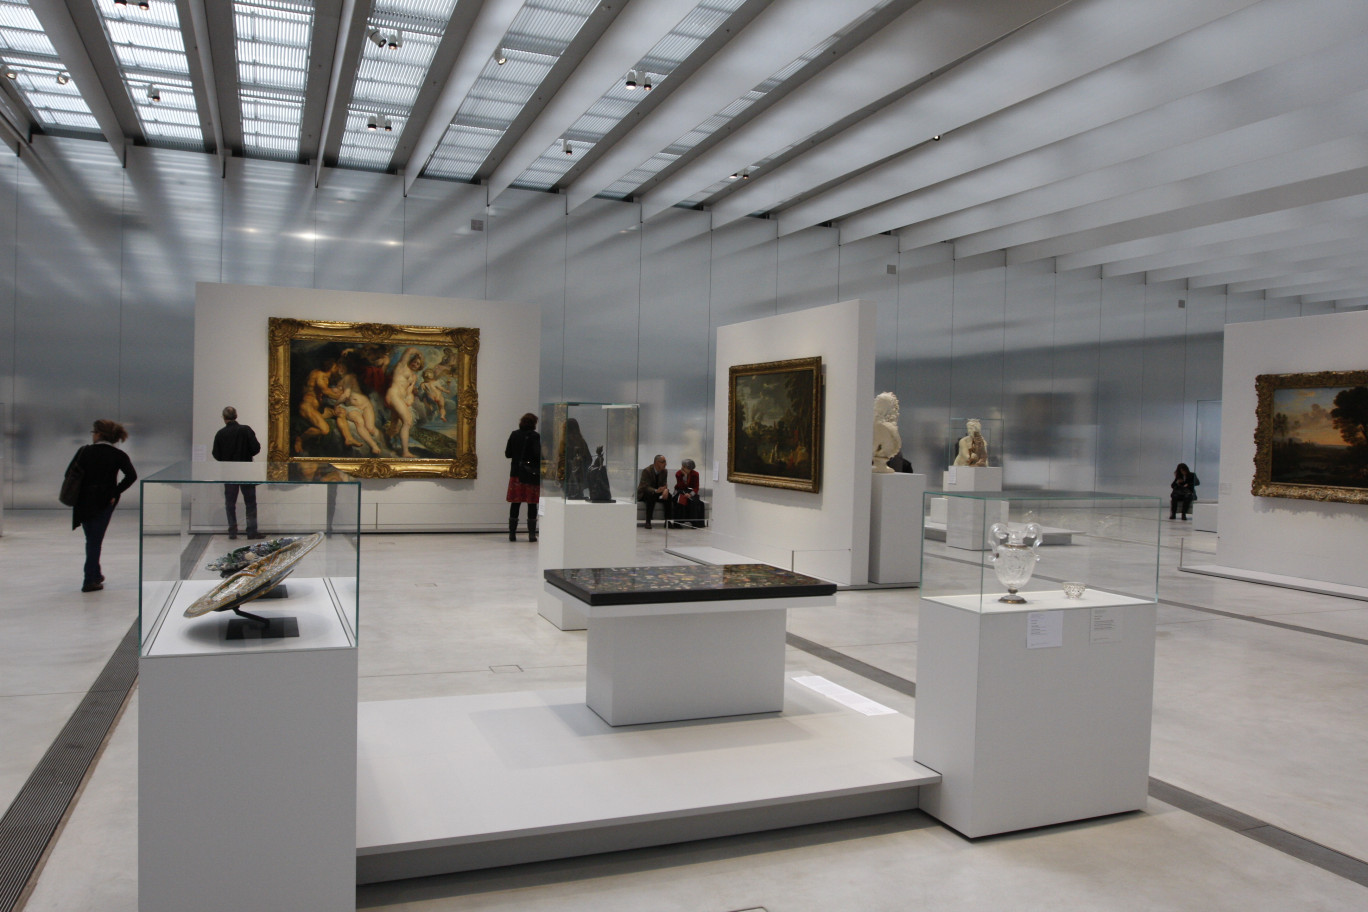 Le Louvre-Lens aura attiré un peu plus de 1 400 000 visiteurs en deux ans, l’enjeu pour le musée est dorénavant de continuer à attirer d’autres visiteurs et renouveler les collections pour susciter plusieurs visites des mêmes personnes.